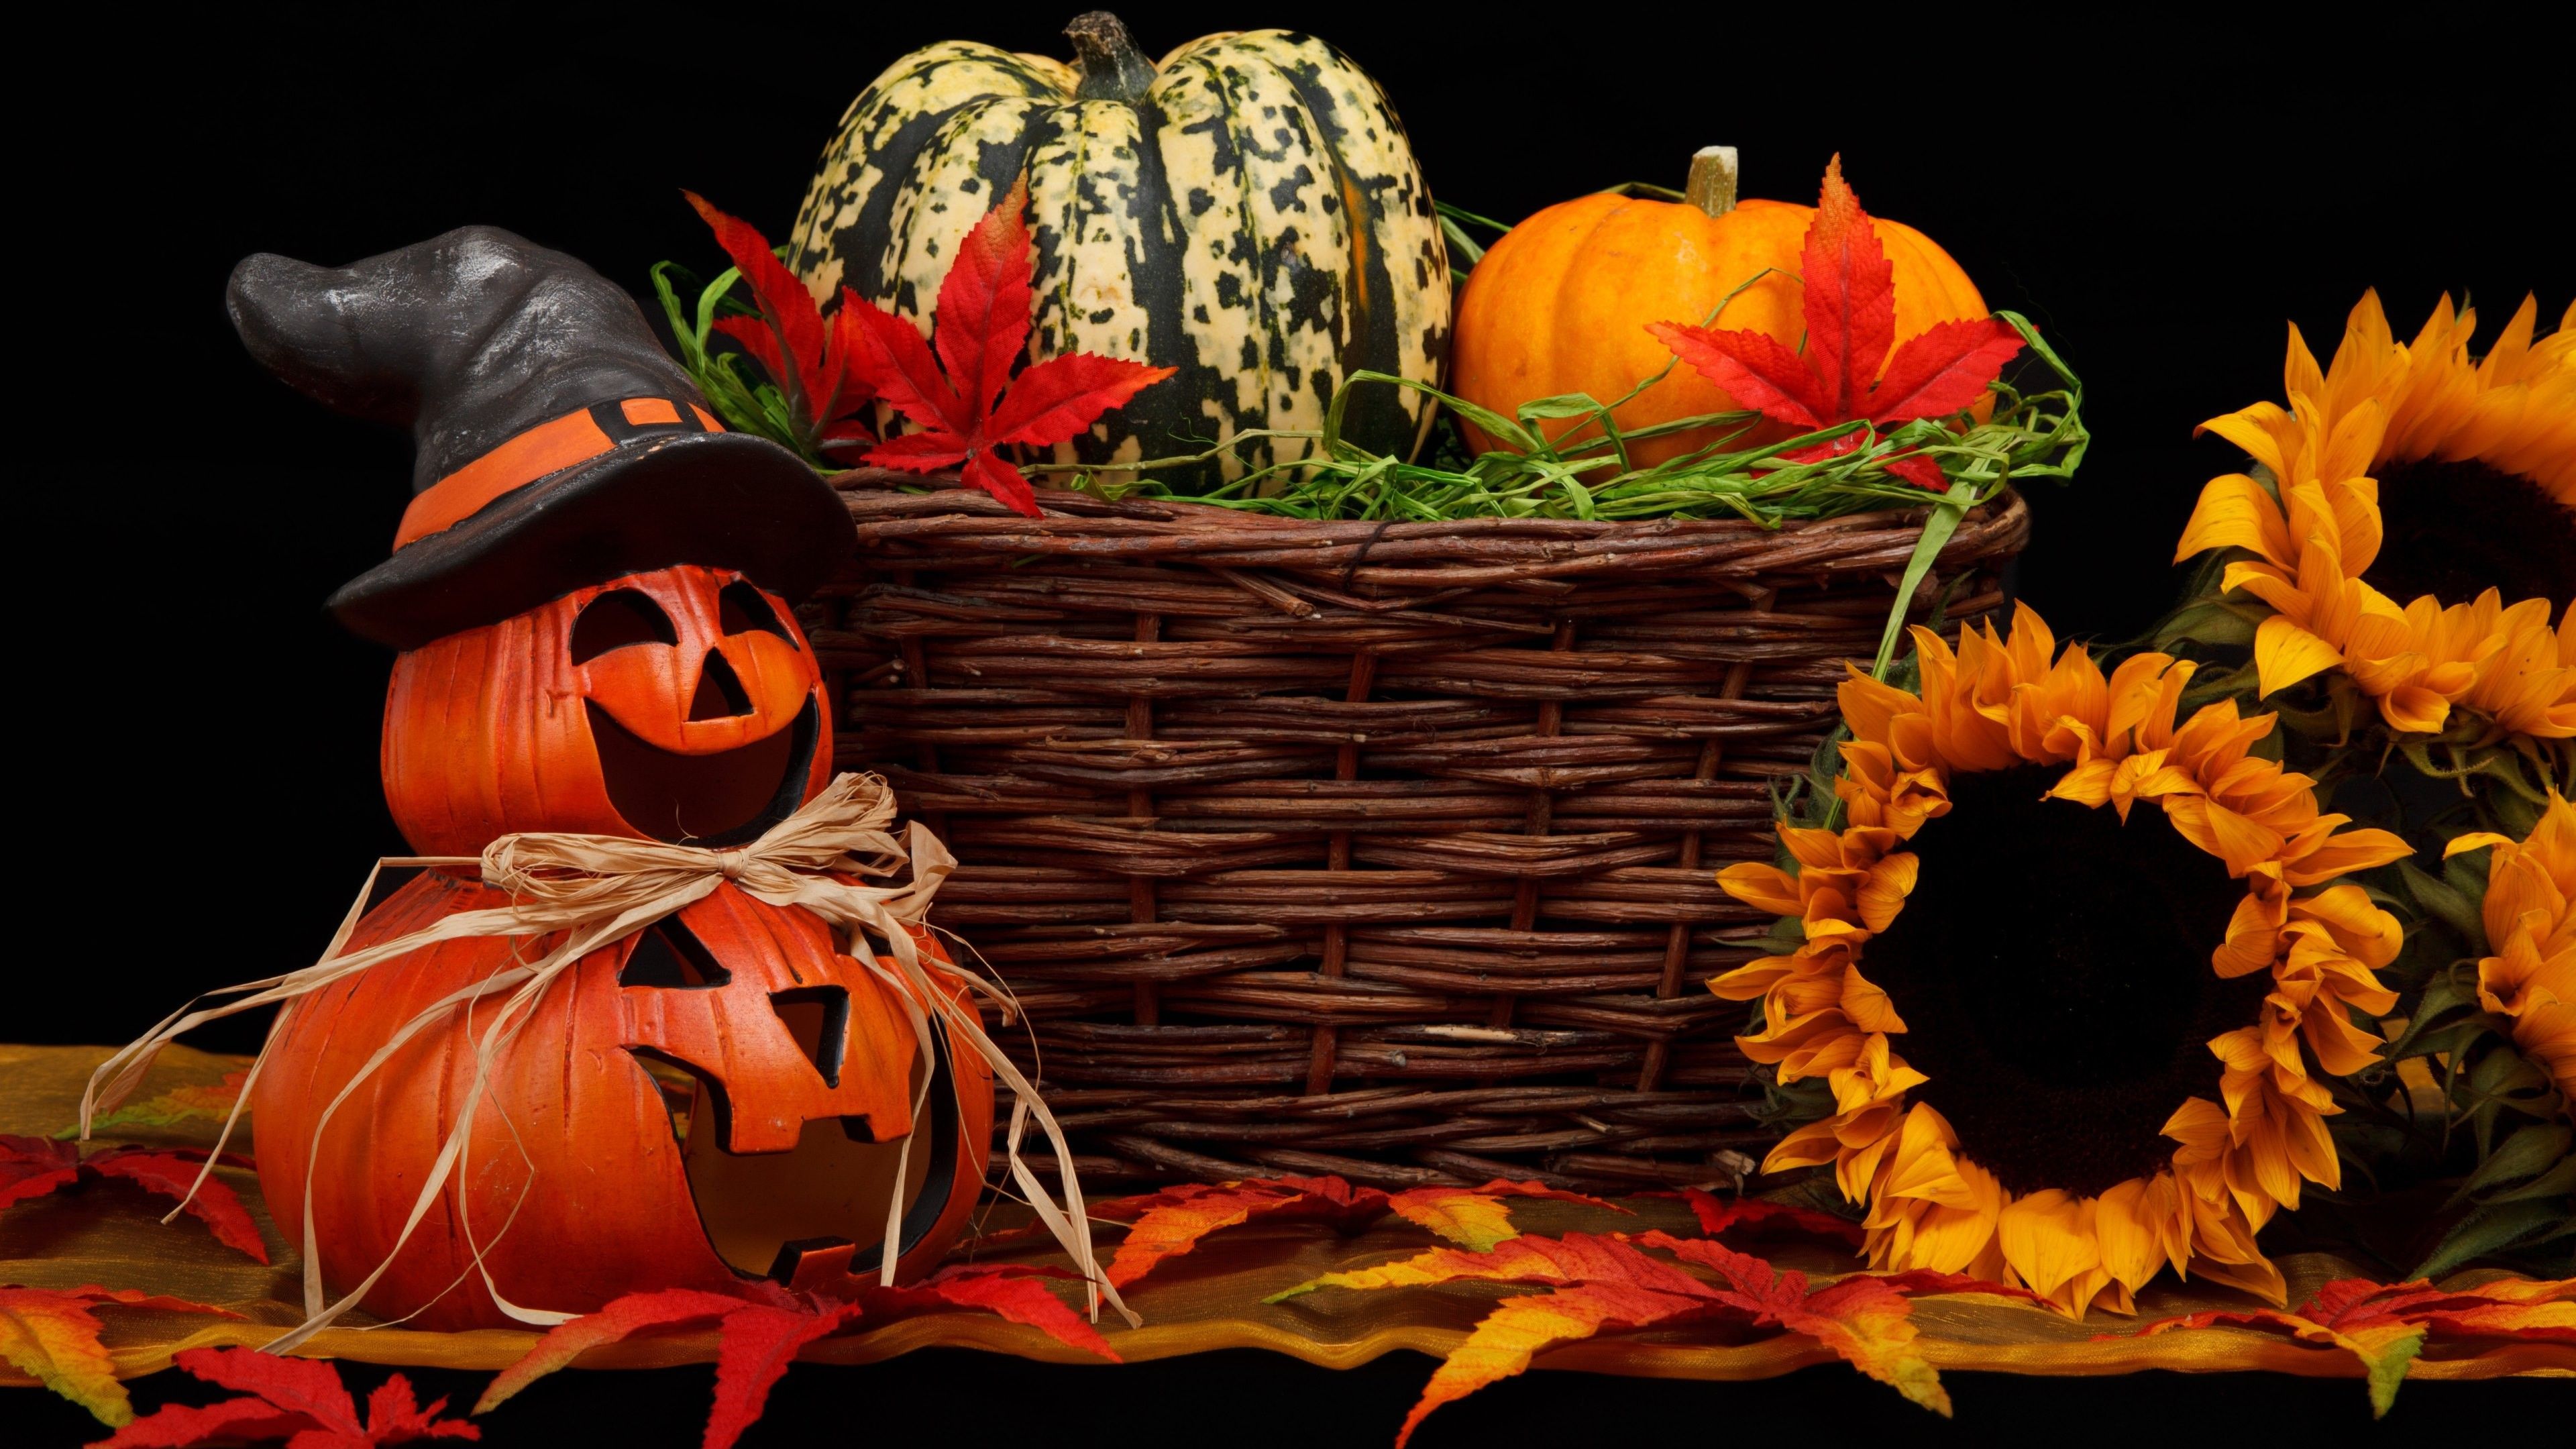 Wallpaper Holiday, Halloween, 31 october, pumpkin host, Holidays